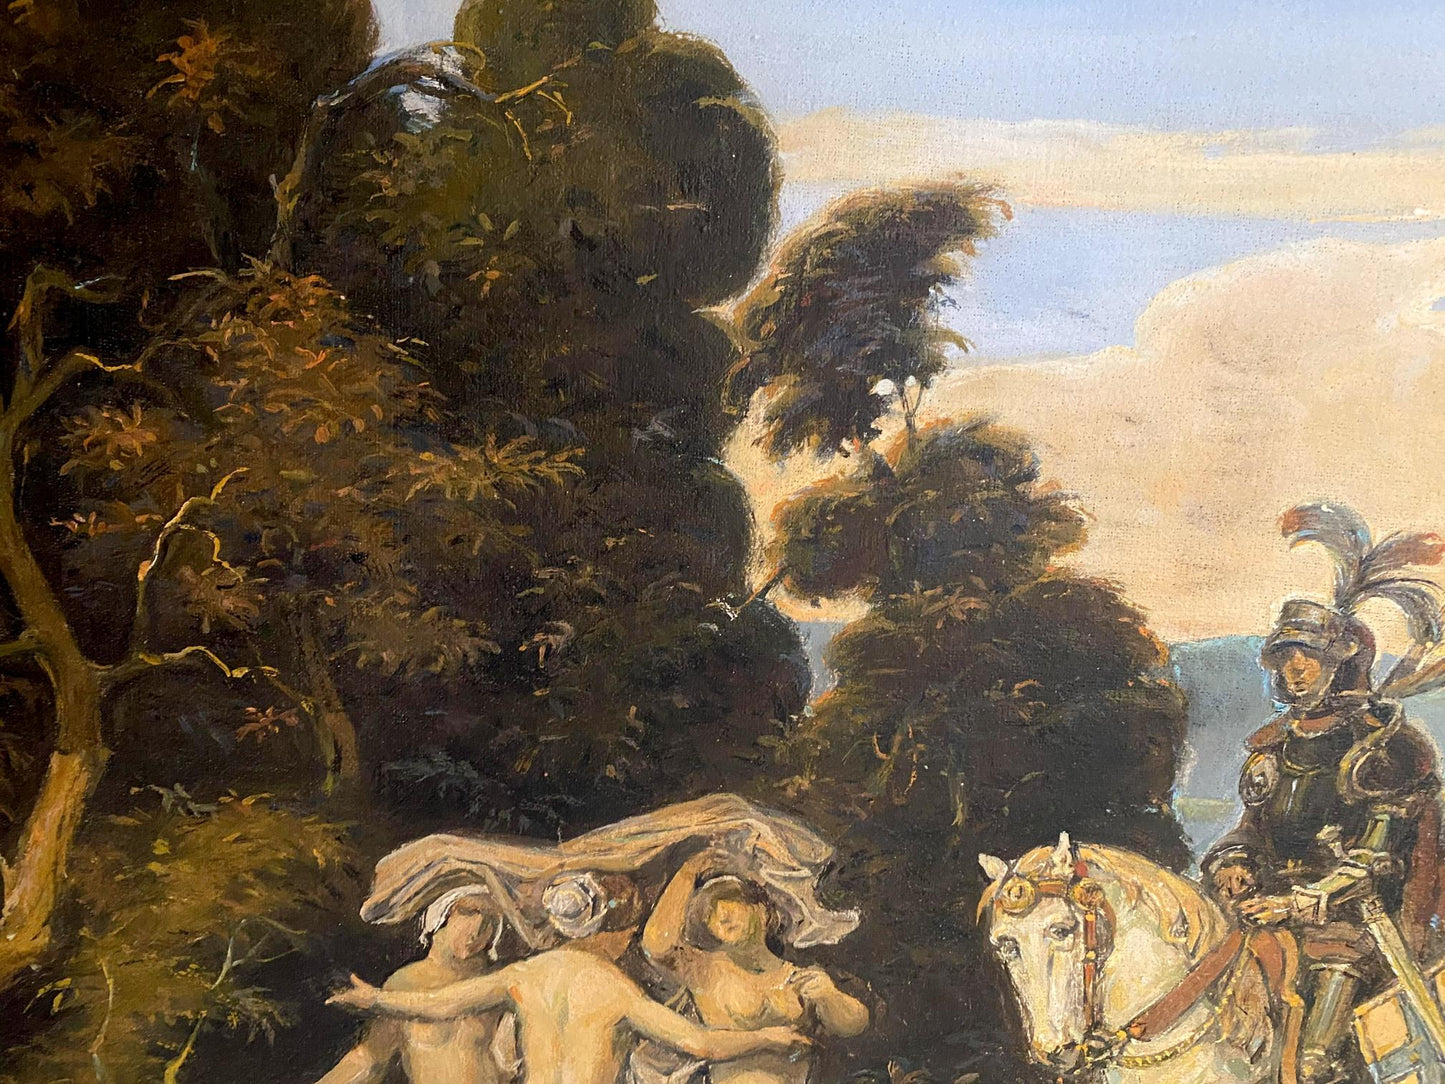 Litvinov's oil artwork portrays the path of a medieval knight